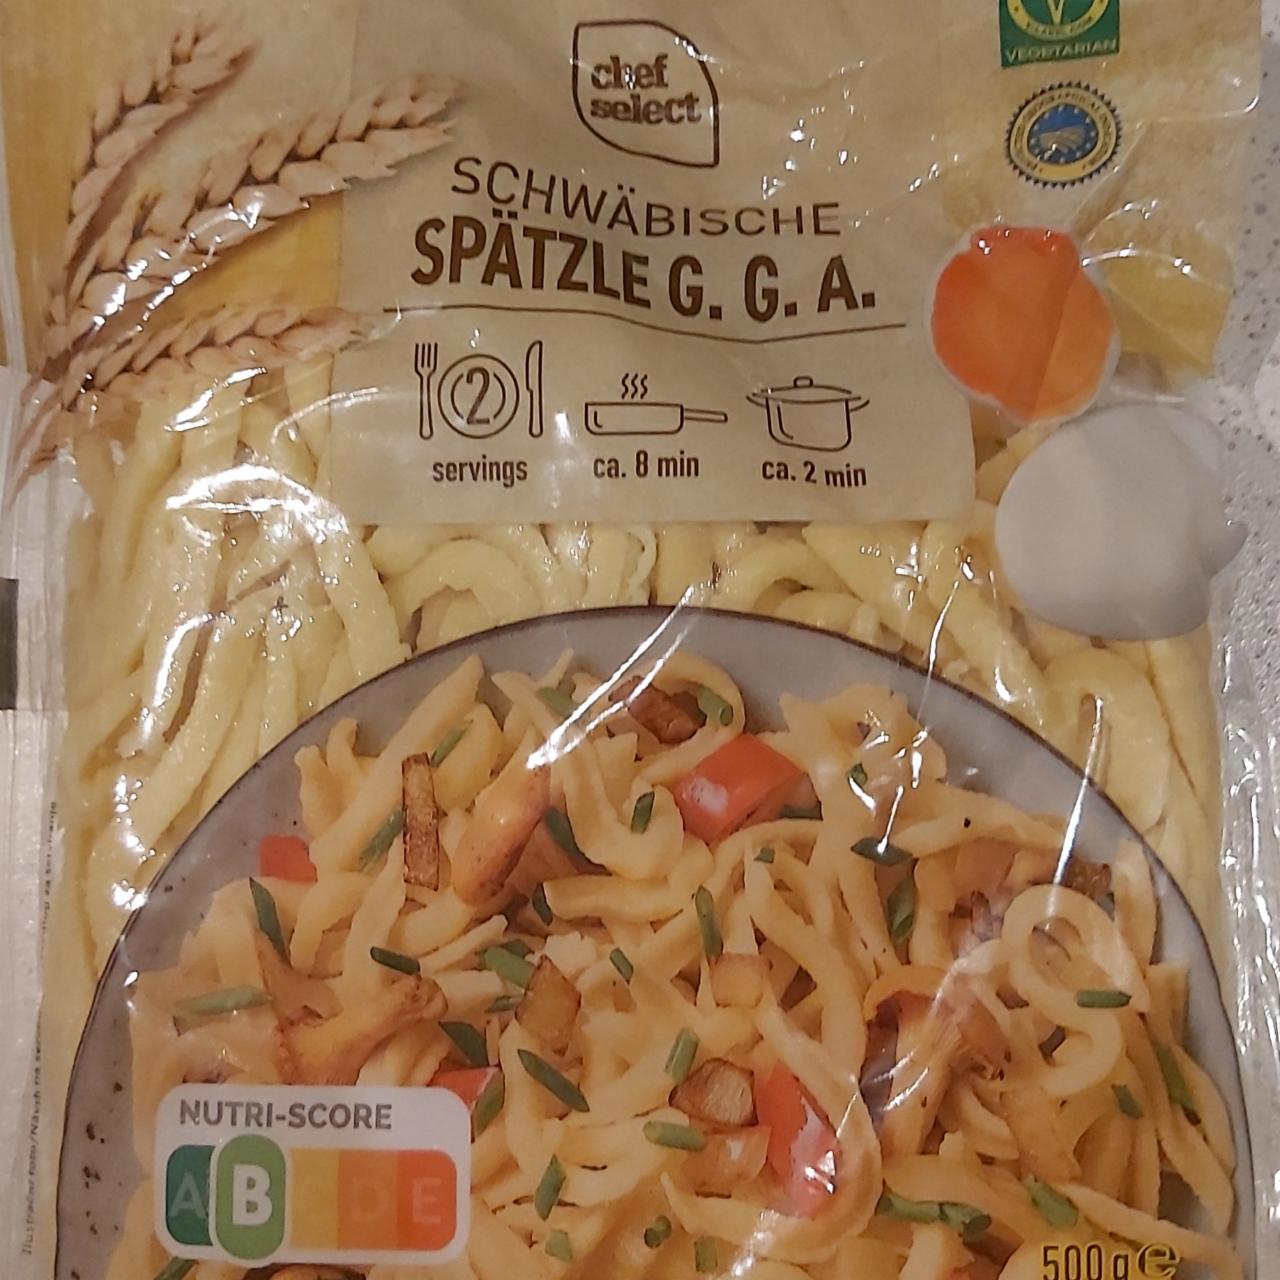 Képek - Schwäbische Spätzle Chef Select